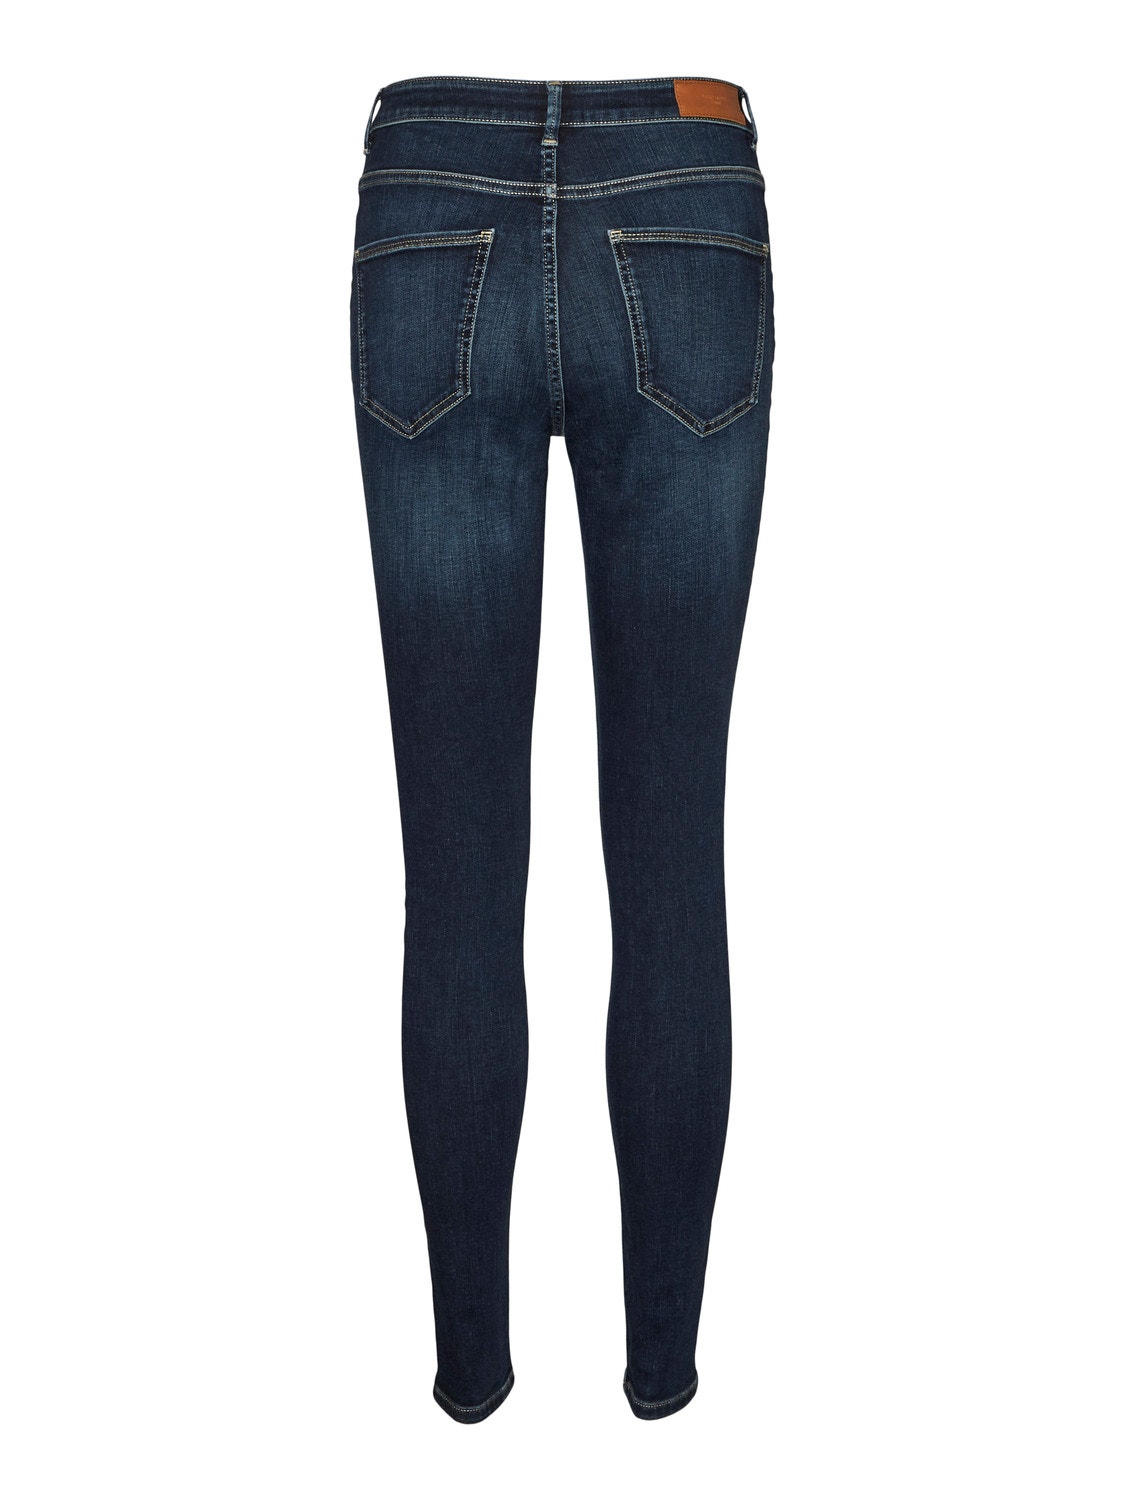 Vero Moda VMSOPHIA Skinny Fit Jeans -Dark Blue Denim - 10287650